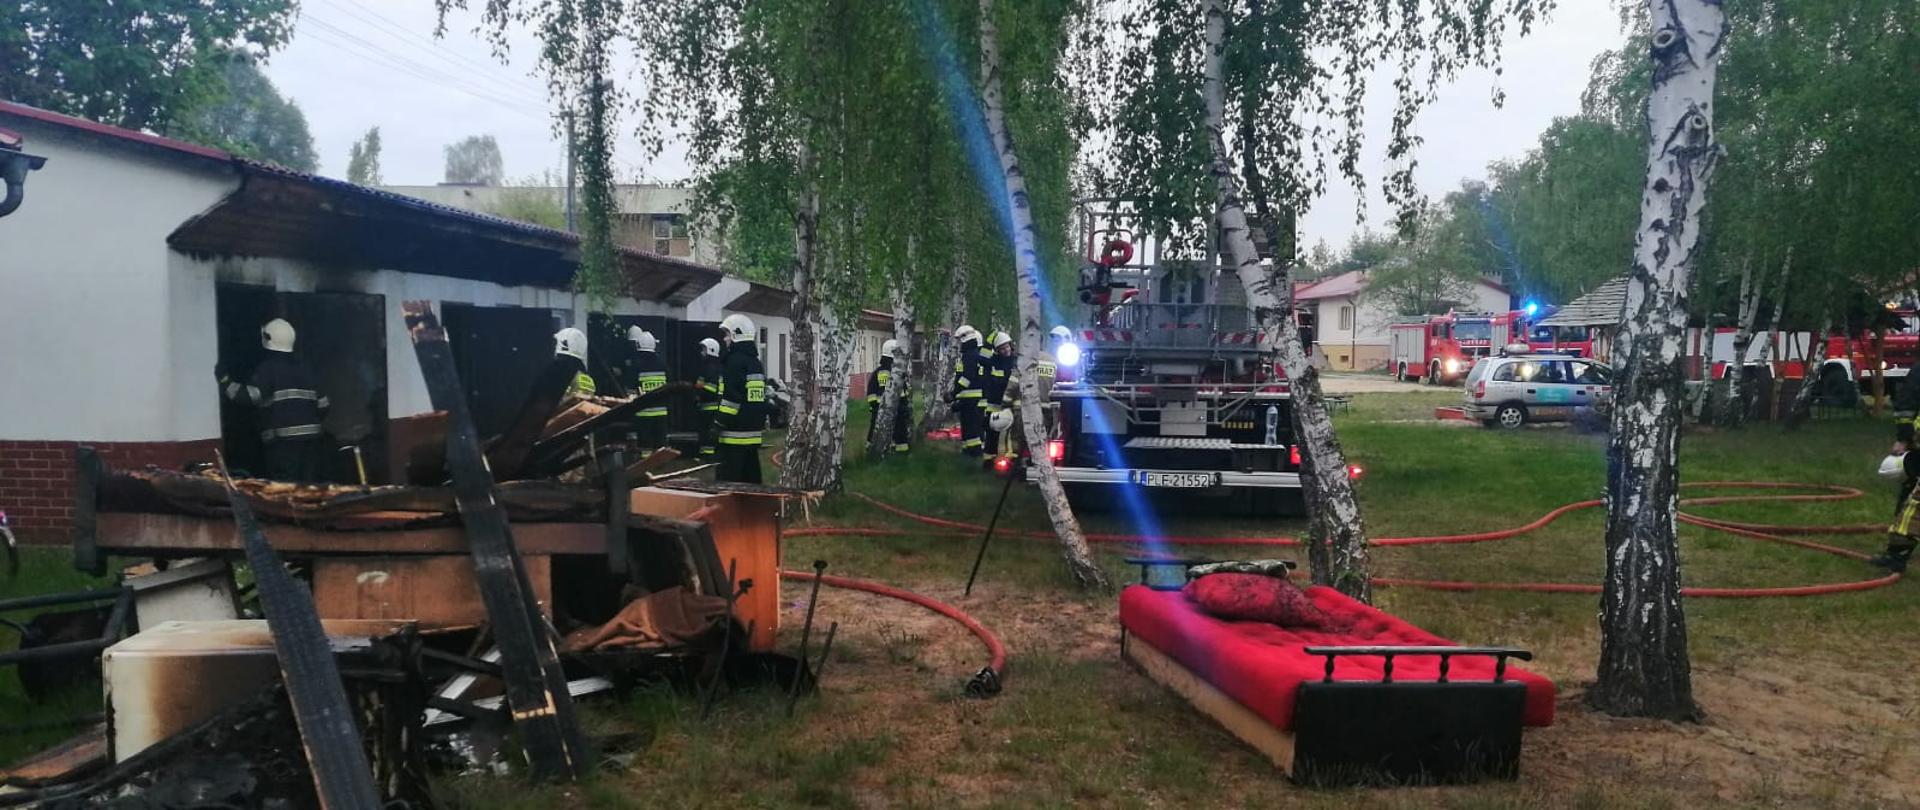 Samochód pożarniczy stoi na polanie obok strażacy przy spalonym budynku.